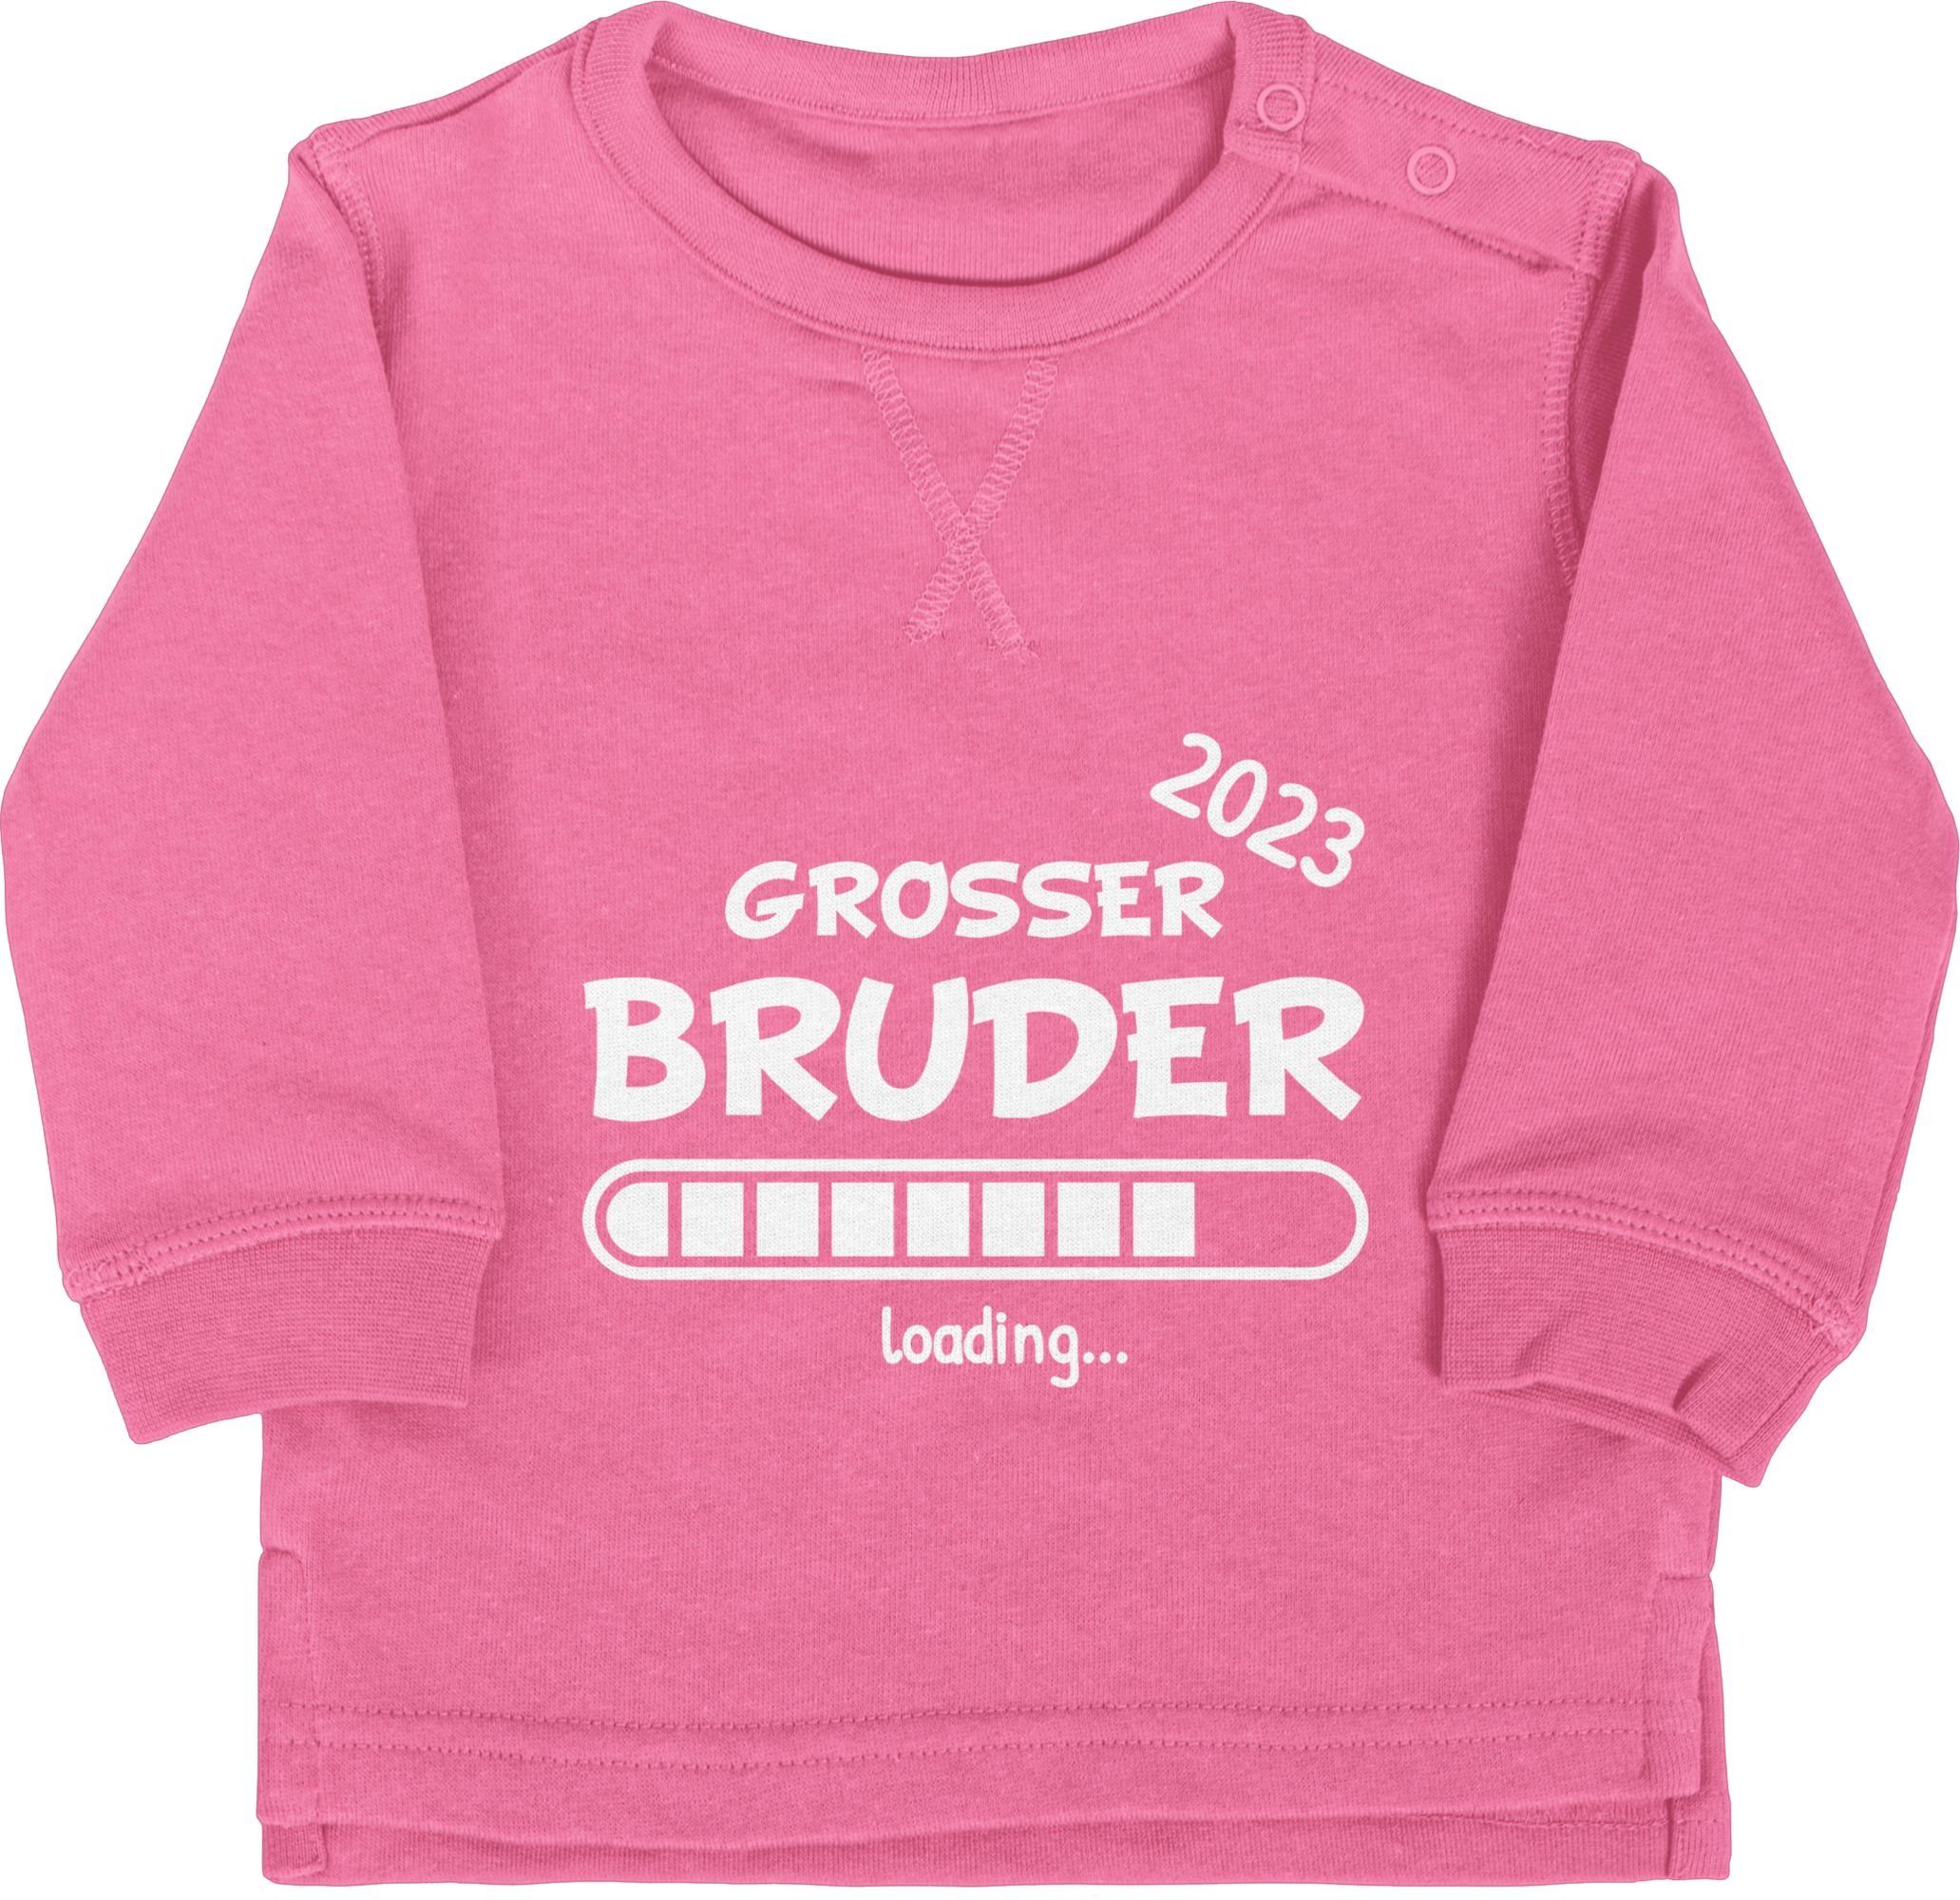 Shirtracer Sweatshirt Großer Bruder loading 2023 Großer Bruder 3 Pink